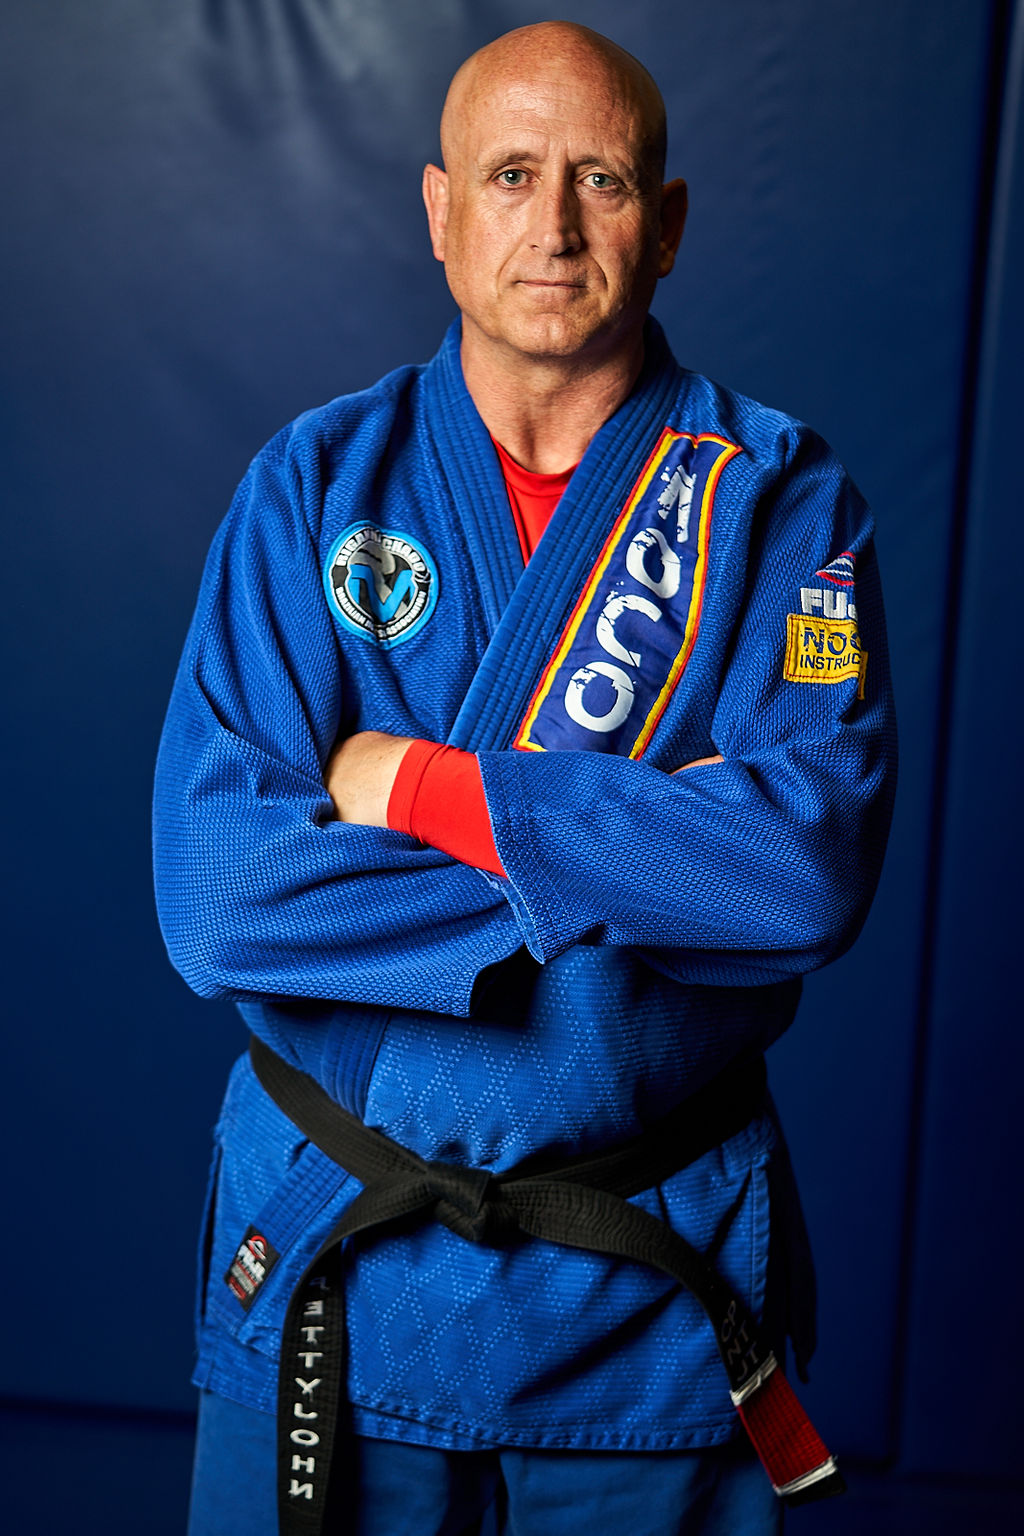 Should a blue belt in Brazilian Jiu-Jitsu be teaching?